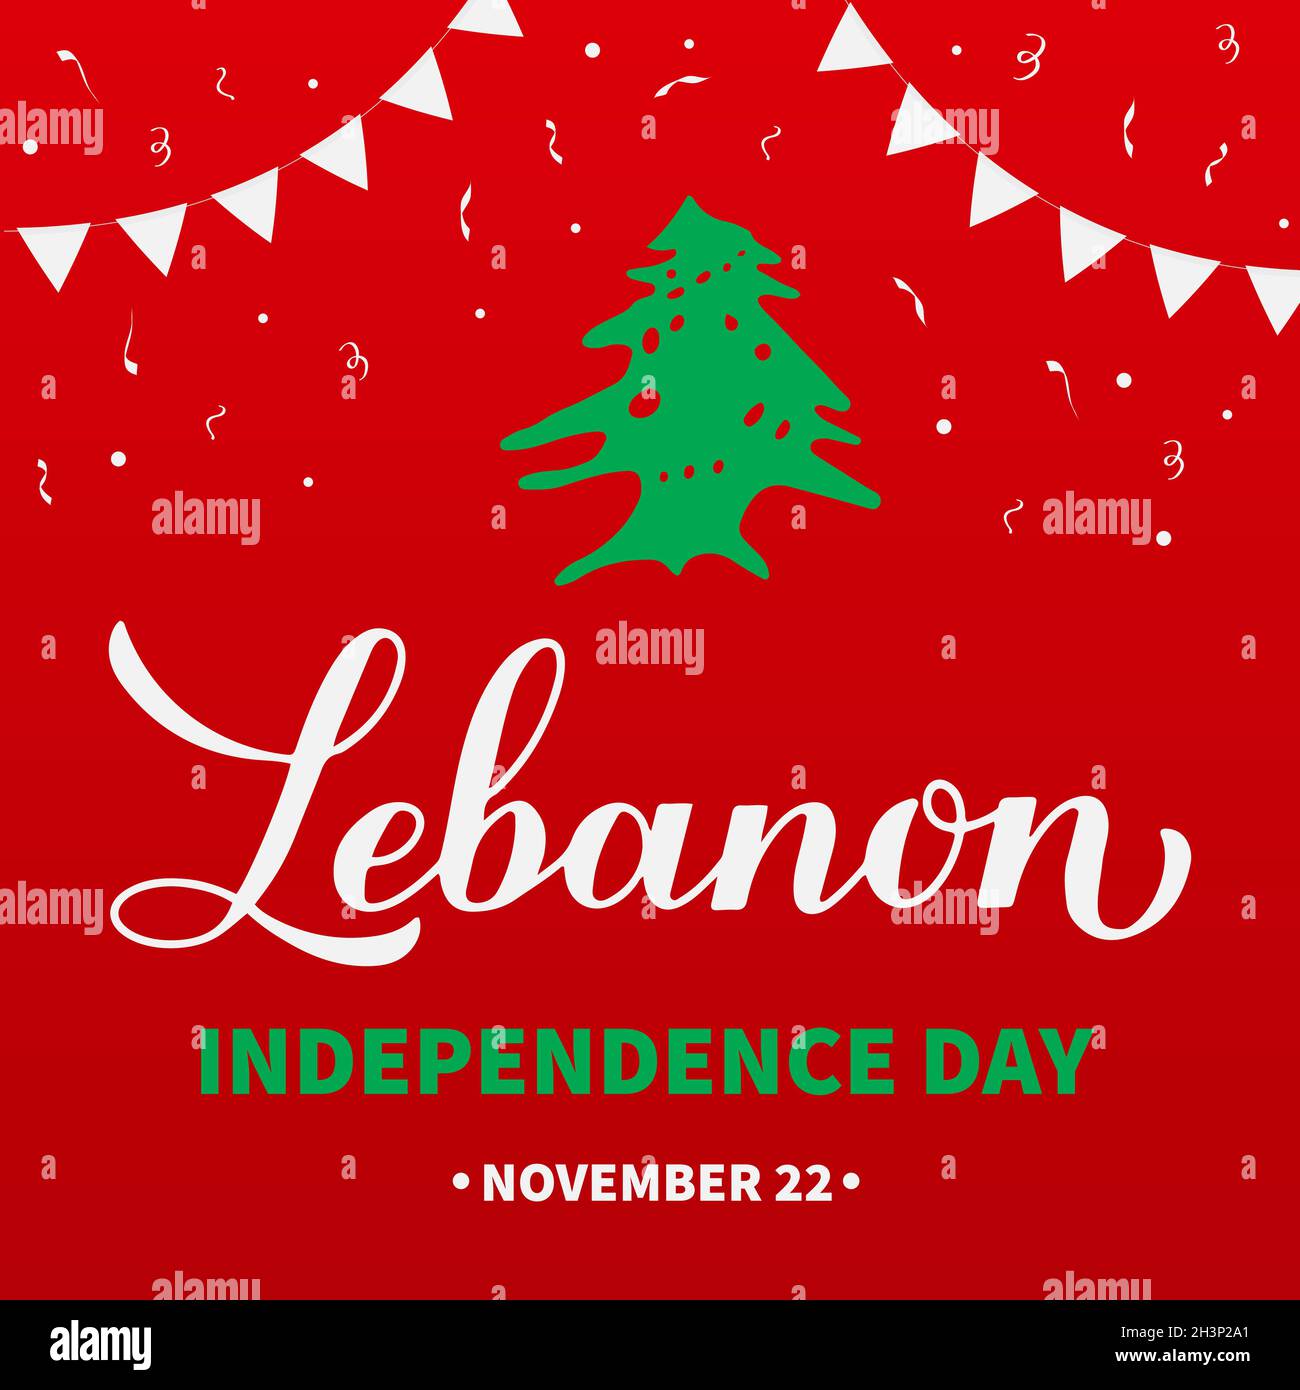 Affiche typographique de la Journée de l'indépendance du Liban.Fête libanaise le 22 novembre.Modèle vectoriel pour bannière, prospectus, cartes de vœux, etc Illustration de Vecteur